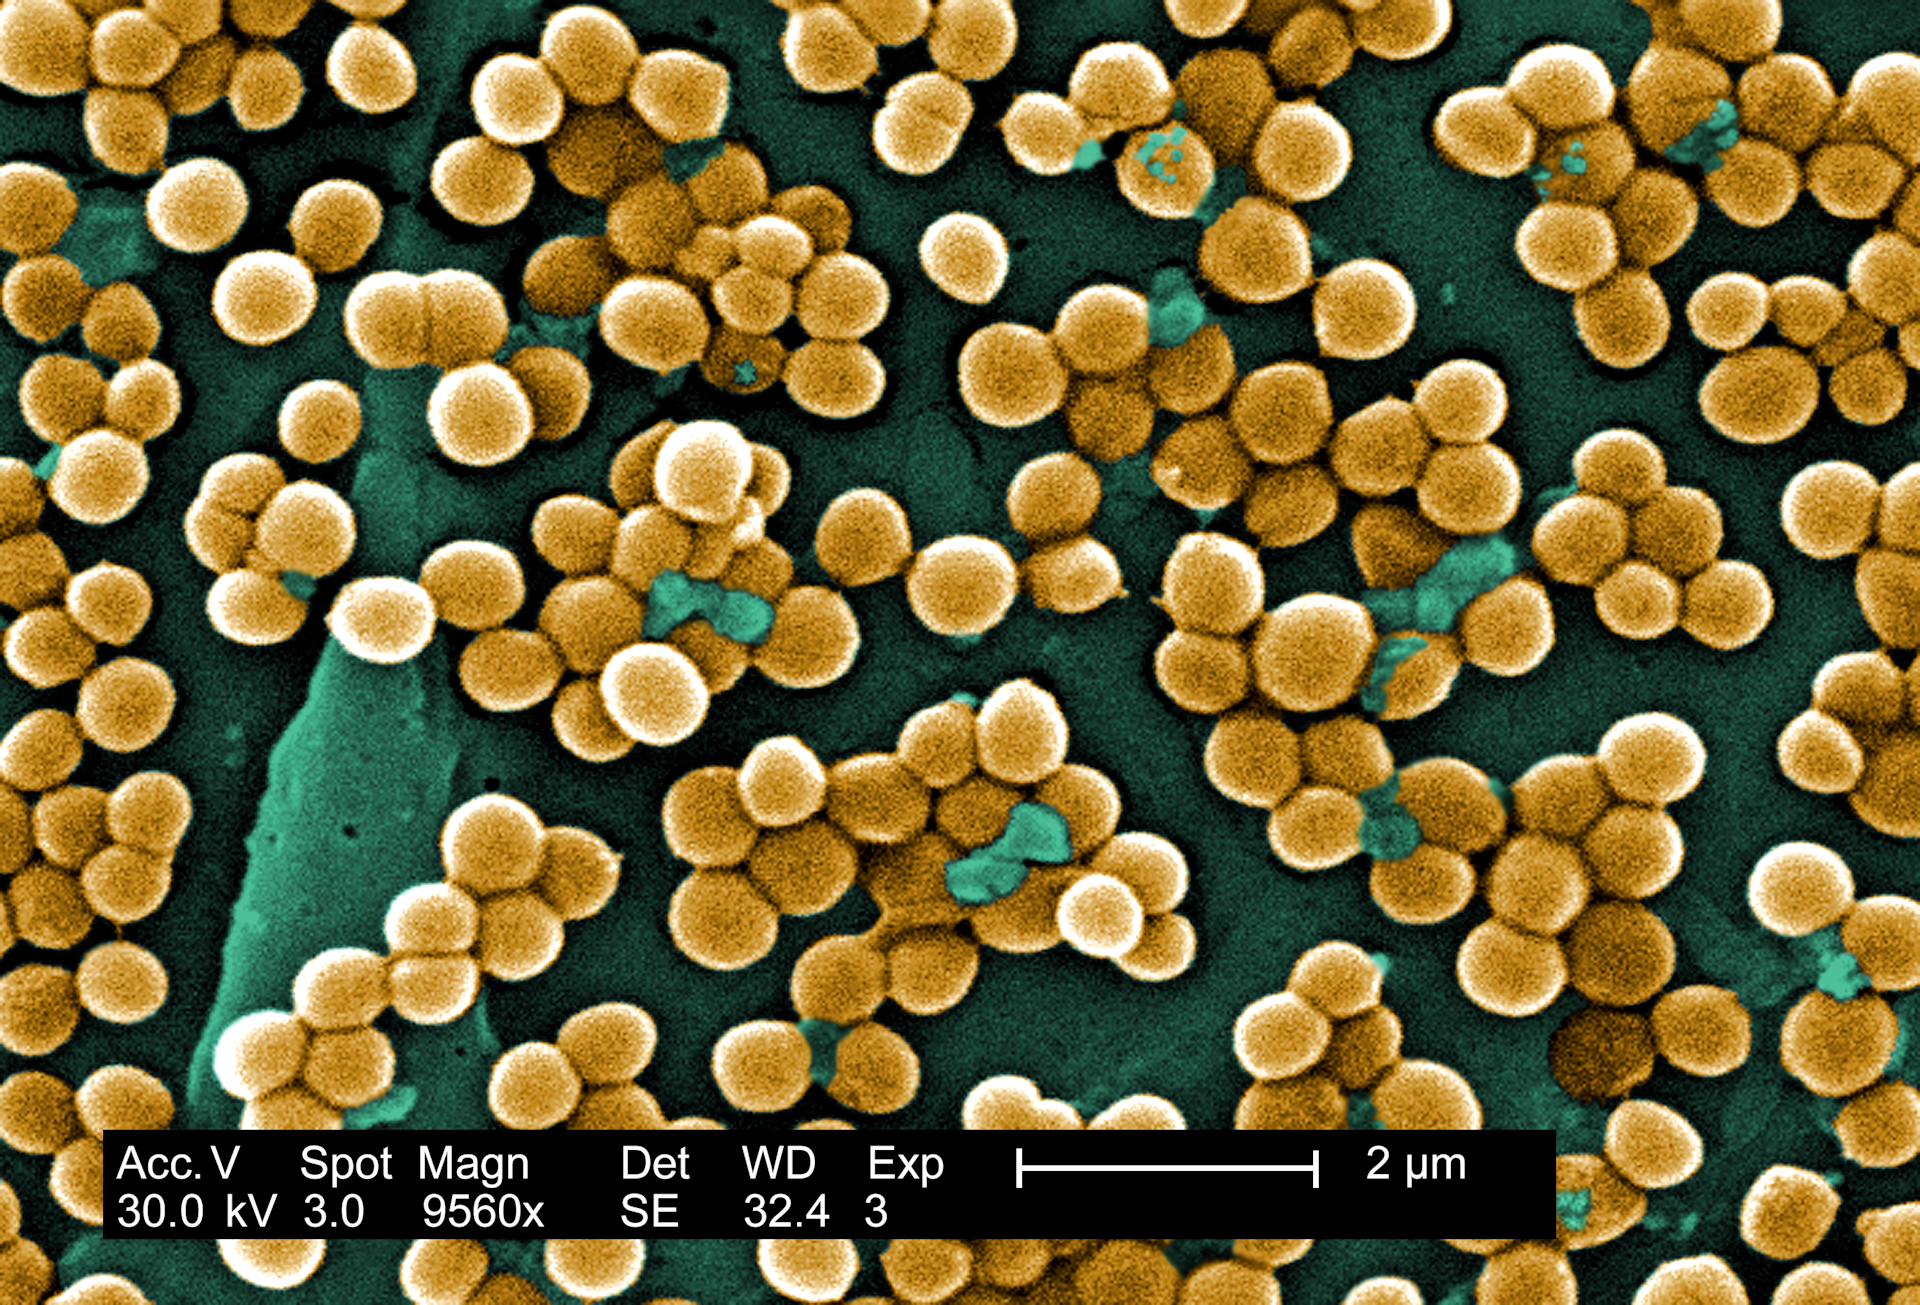 Los científicos revelan de dónde provienen realmente la mayoría de las infecciones 'hospitalarias': ScienceAlert